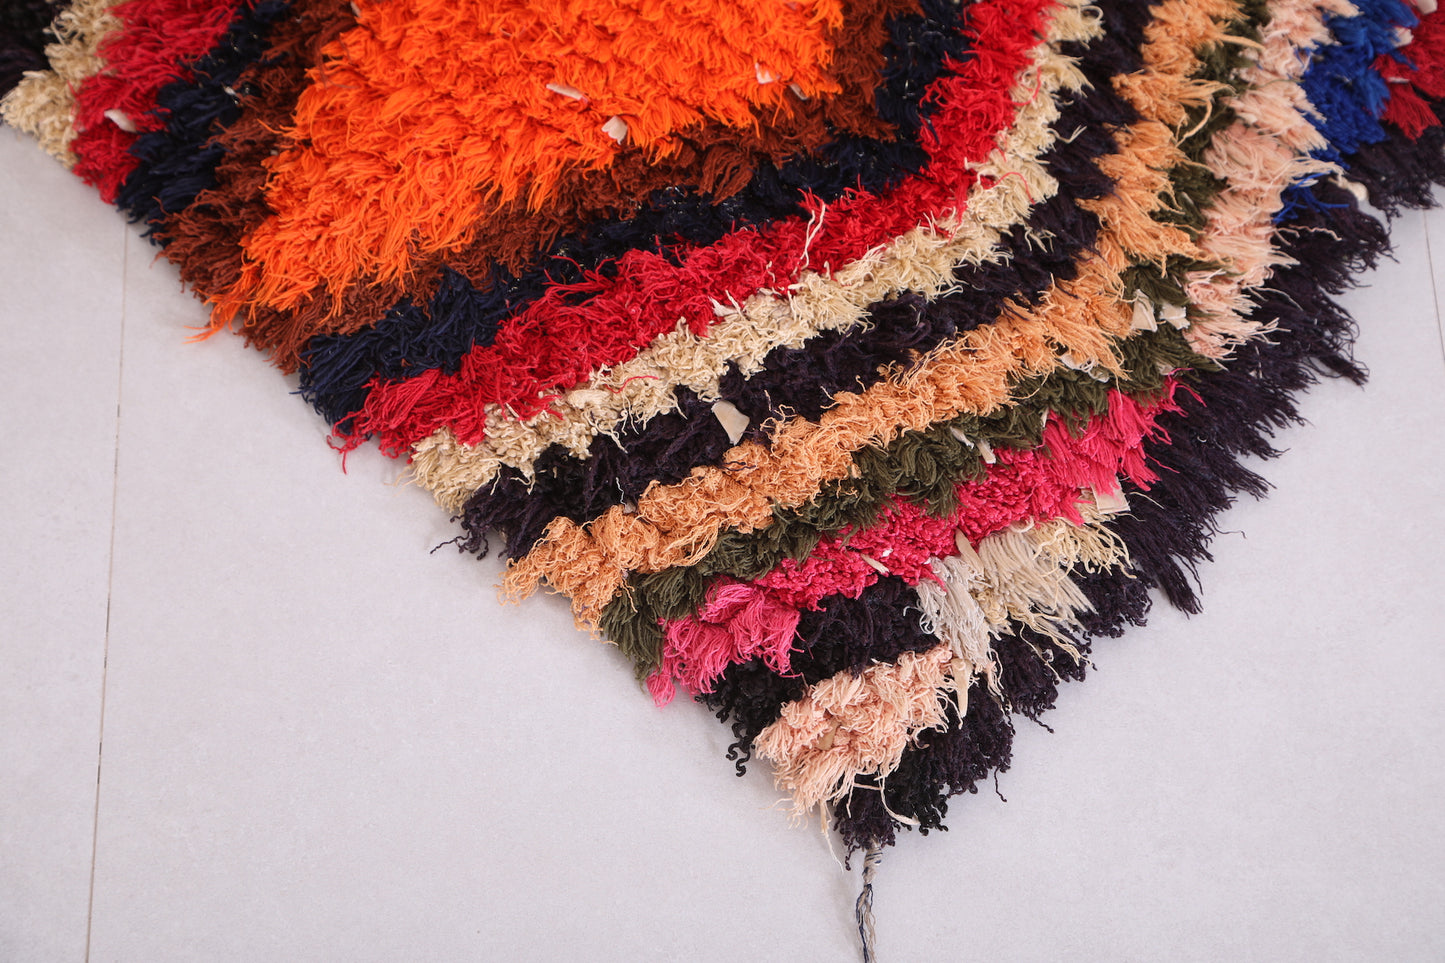 Colorful handmade berber runner rug 2.3 X 5.3 Feet